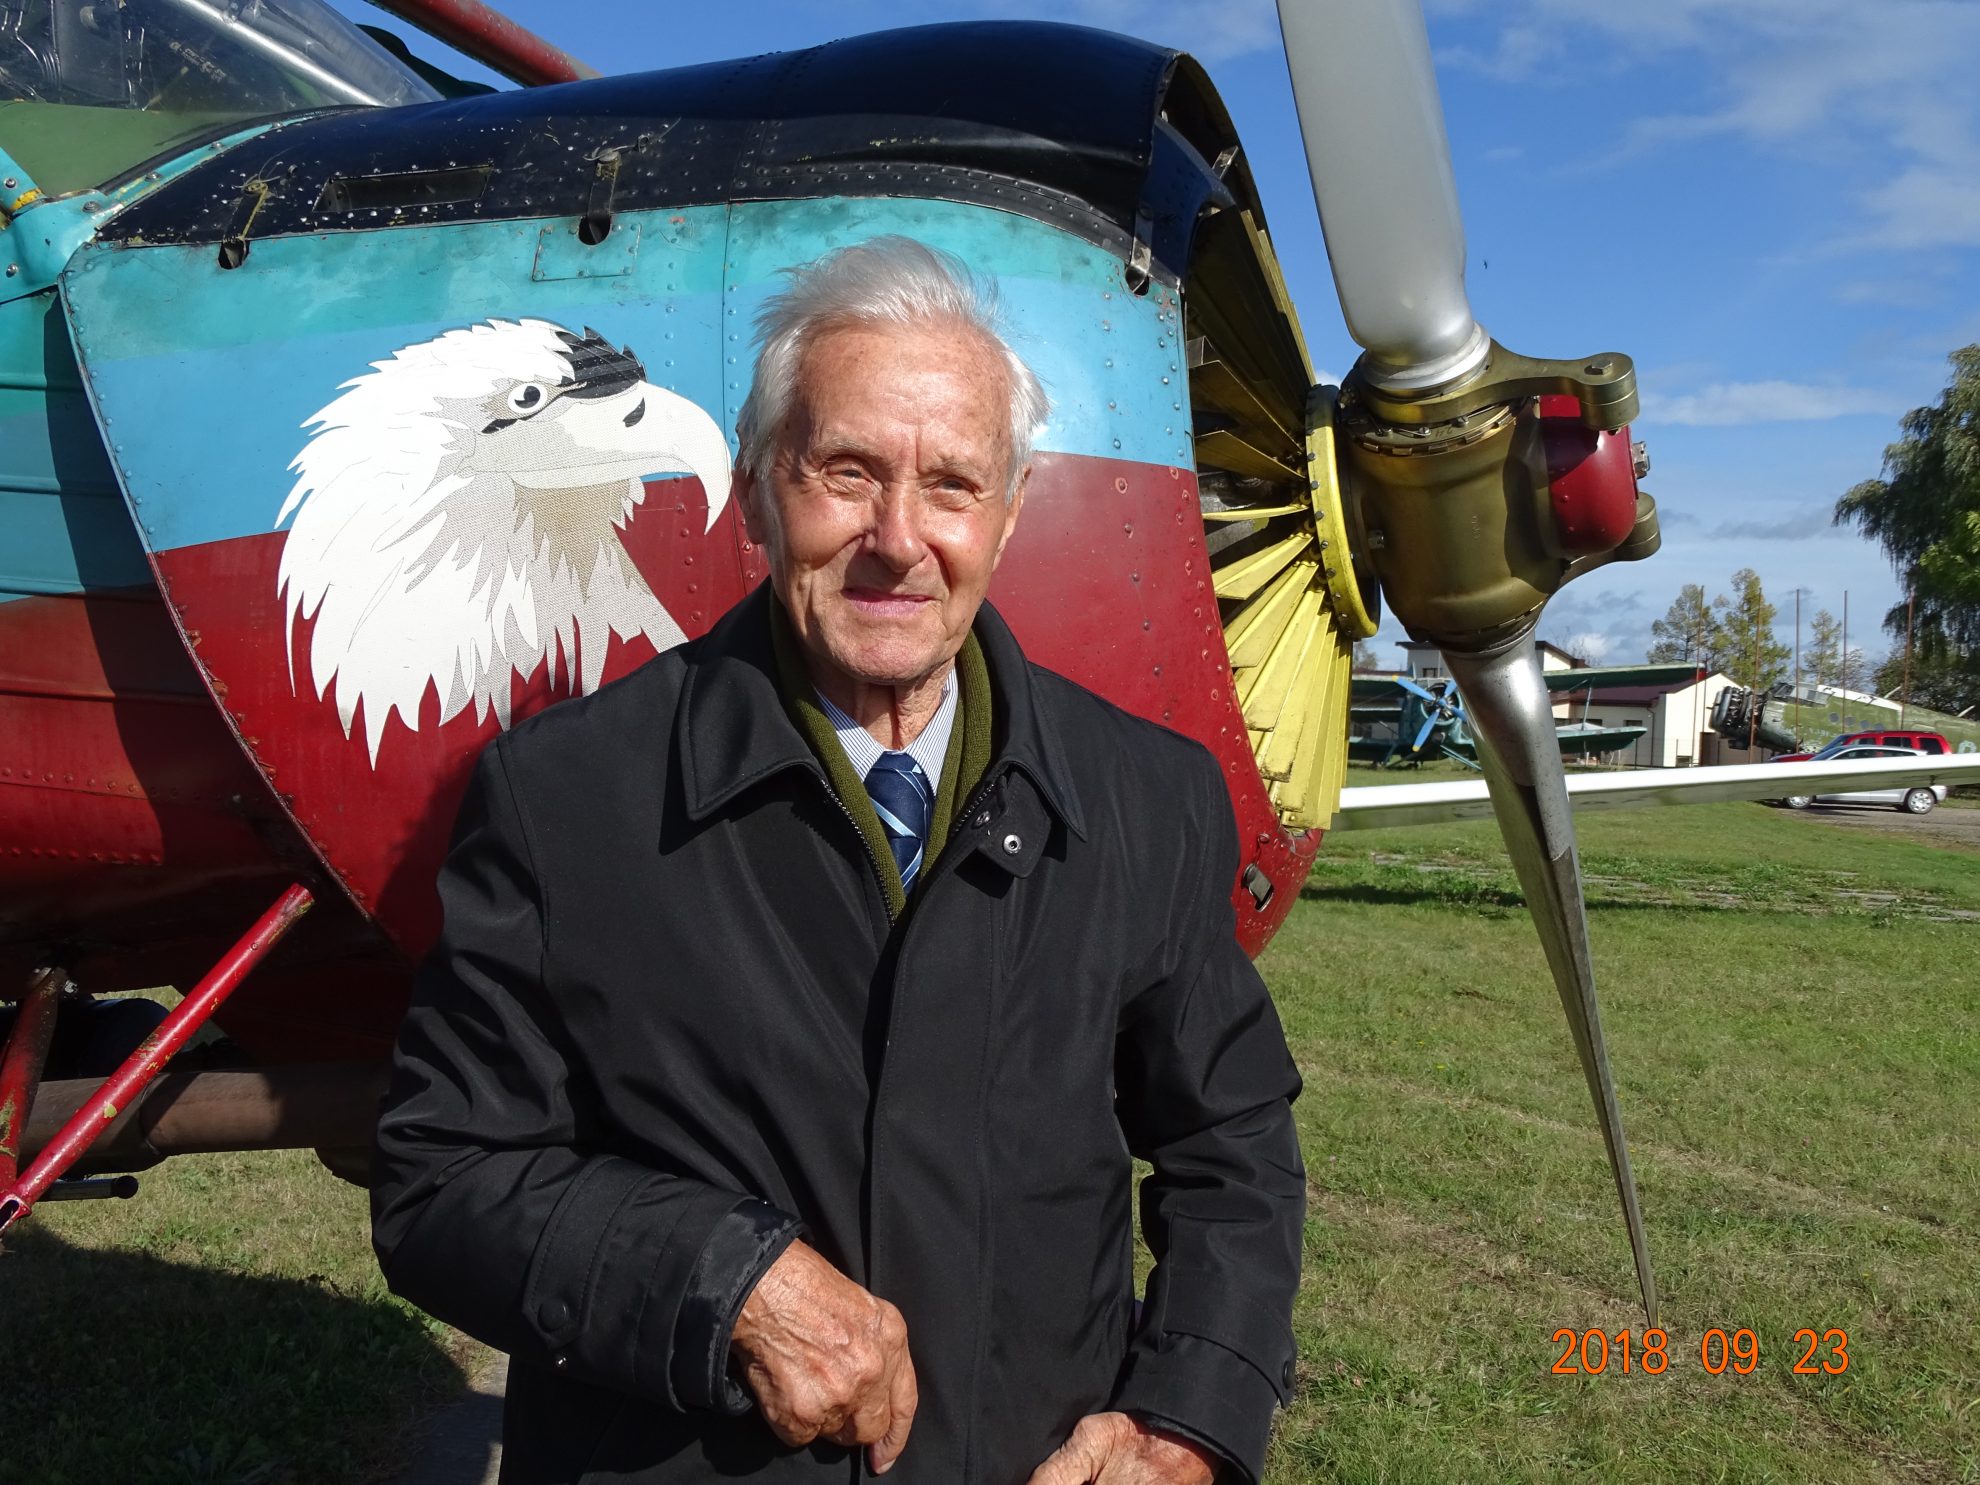 Panevėžio garbės pilietis, žinomas lakūnas ir aviacijos konstruktorius 85-erių metų jubiliejų švenčiantis Vladas Kensgaila sulaukė ne tik valdžios, artimųjų ir draugų dėmesio, bet ir aviacijos veteranų sveikinimų.